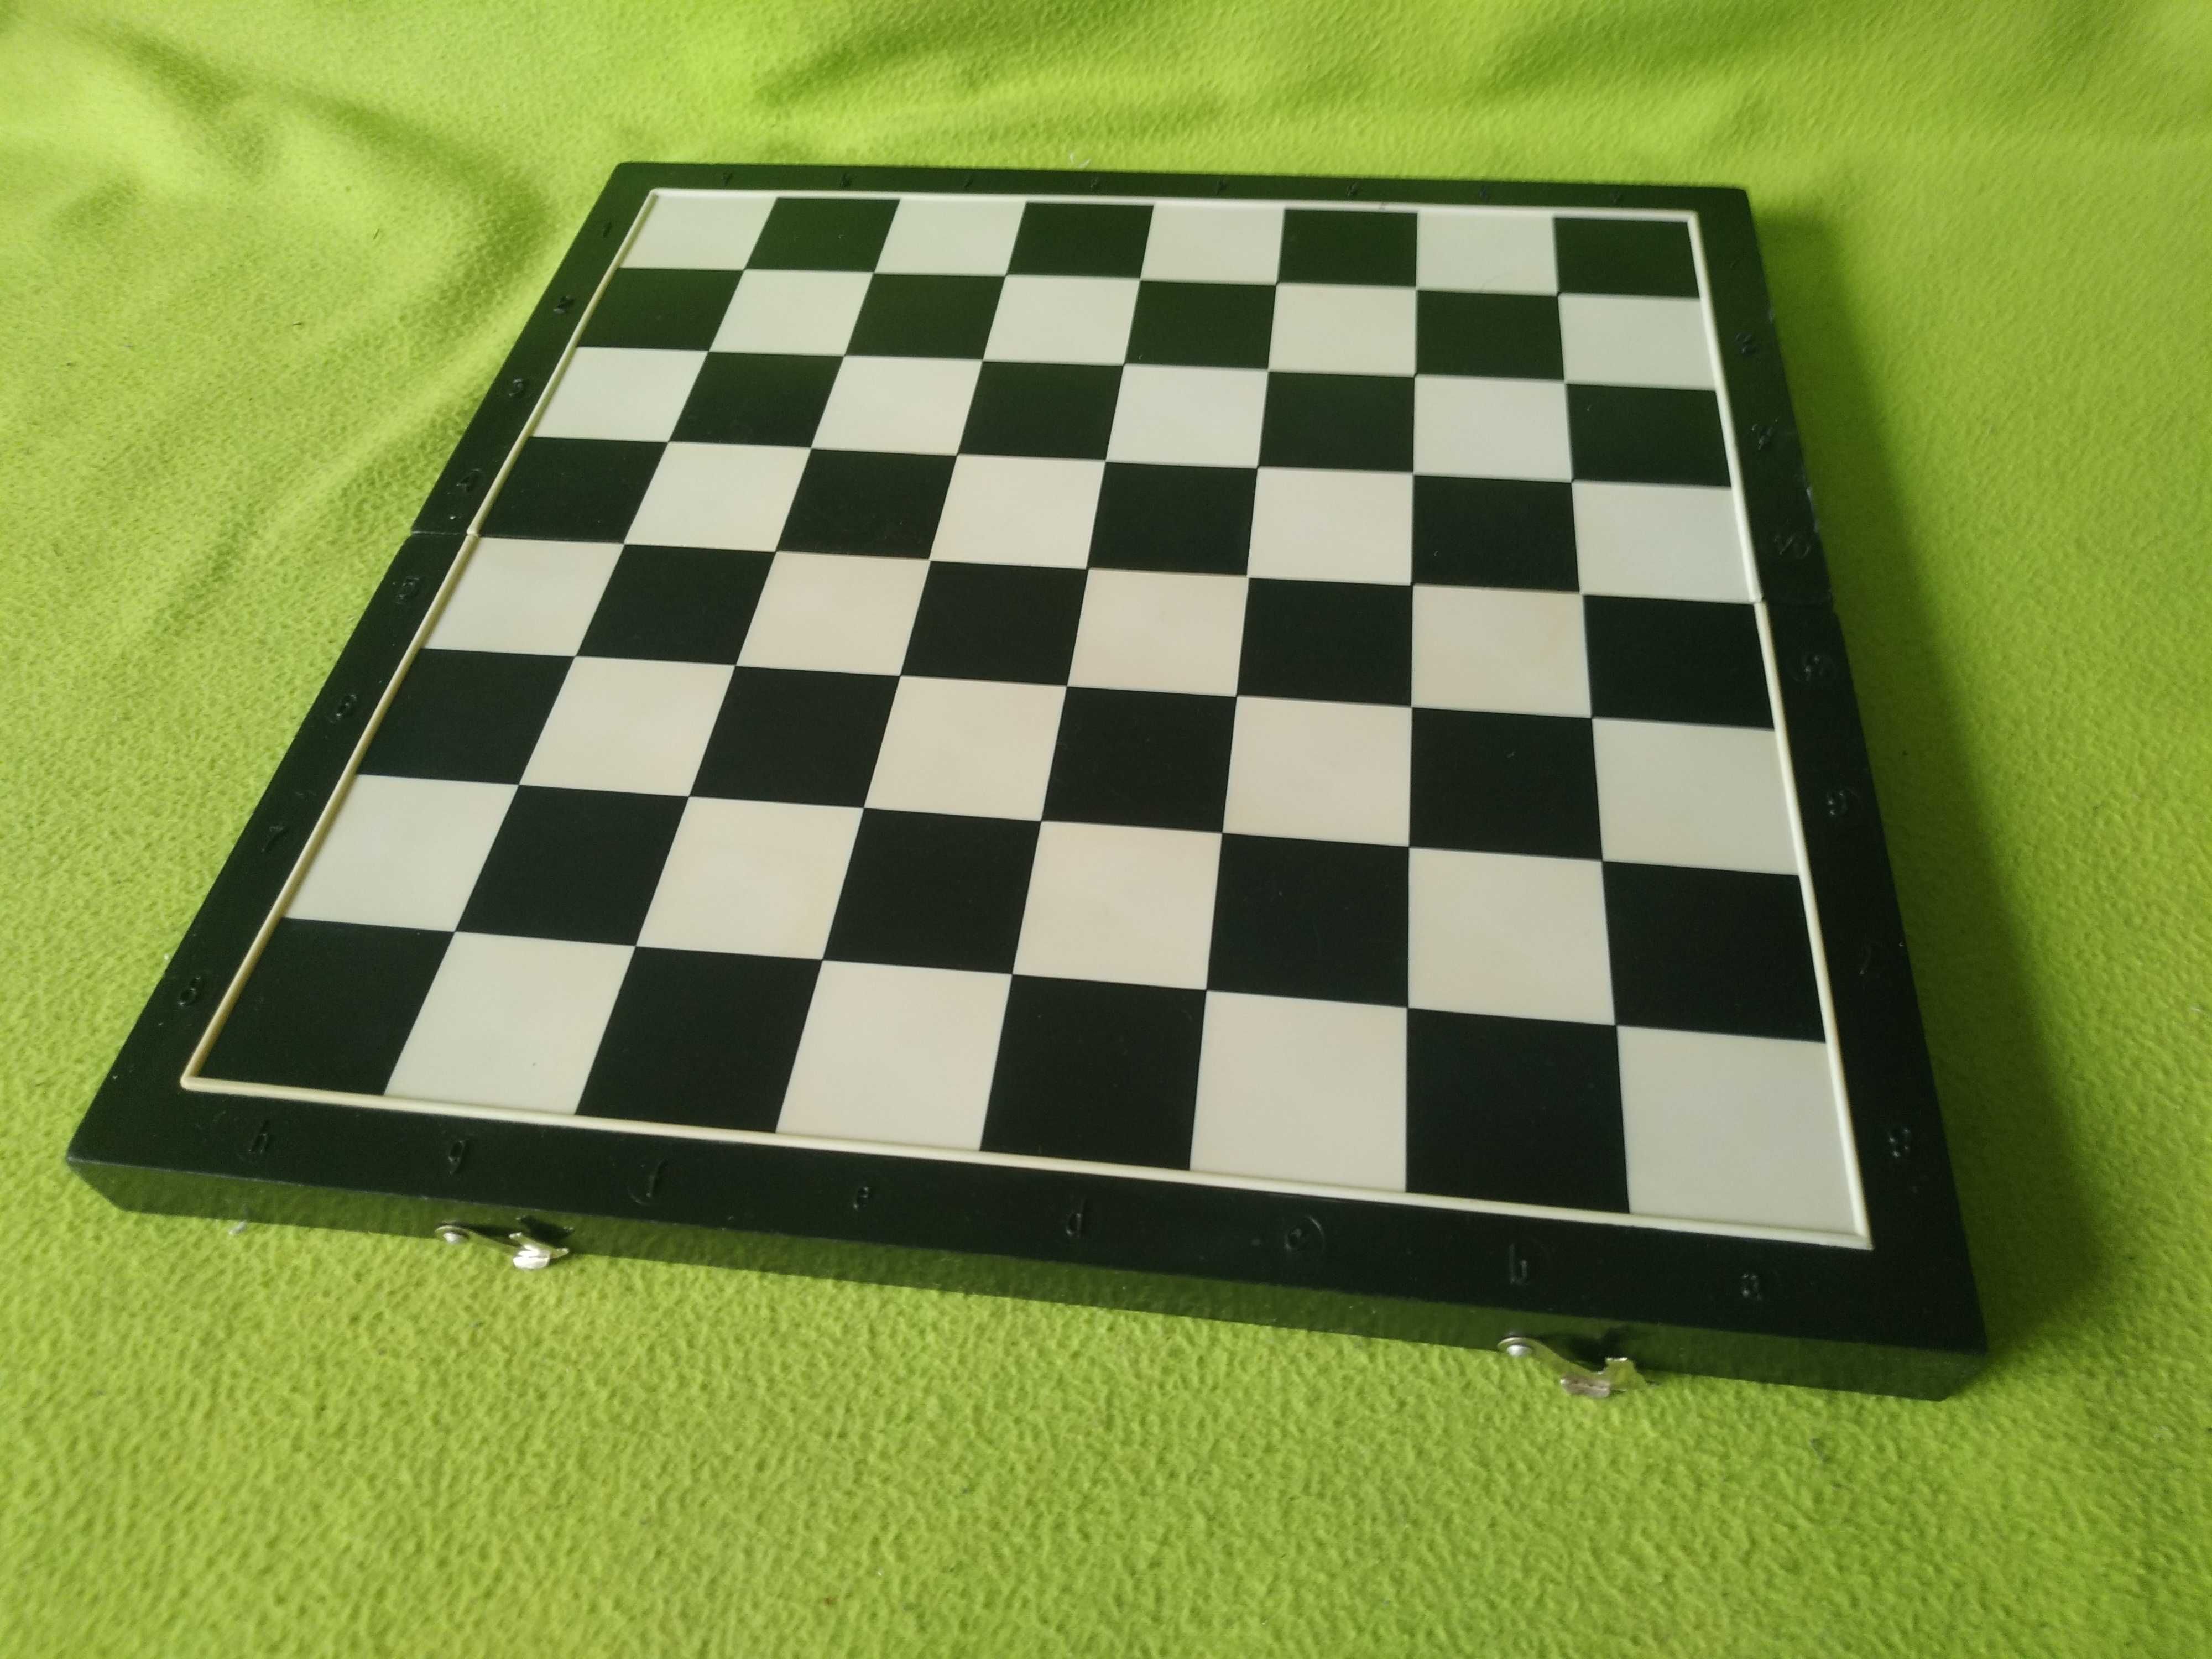 Доски КИЕВПЛАСТМАСС шахматная  40 на 40  см, (без желтизны от времени)